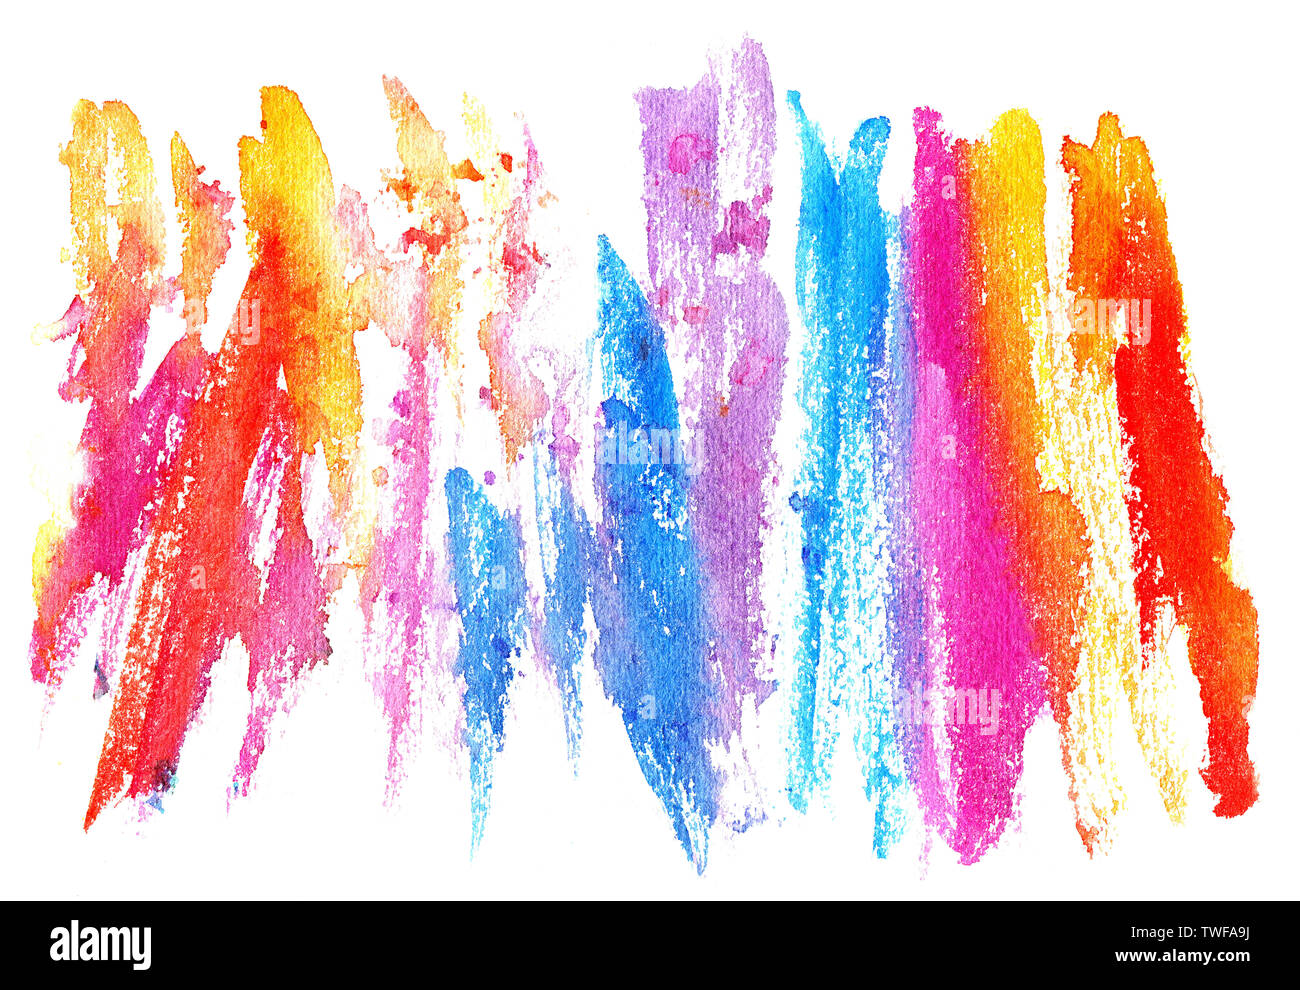 Aquarell abstrakte Abbildung: Helle Regenbogen malen Fleck eingezeichnet mit einem trockenen Pinsel. Kreative rainbow Aquarell Hintergrund. Stockfoto